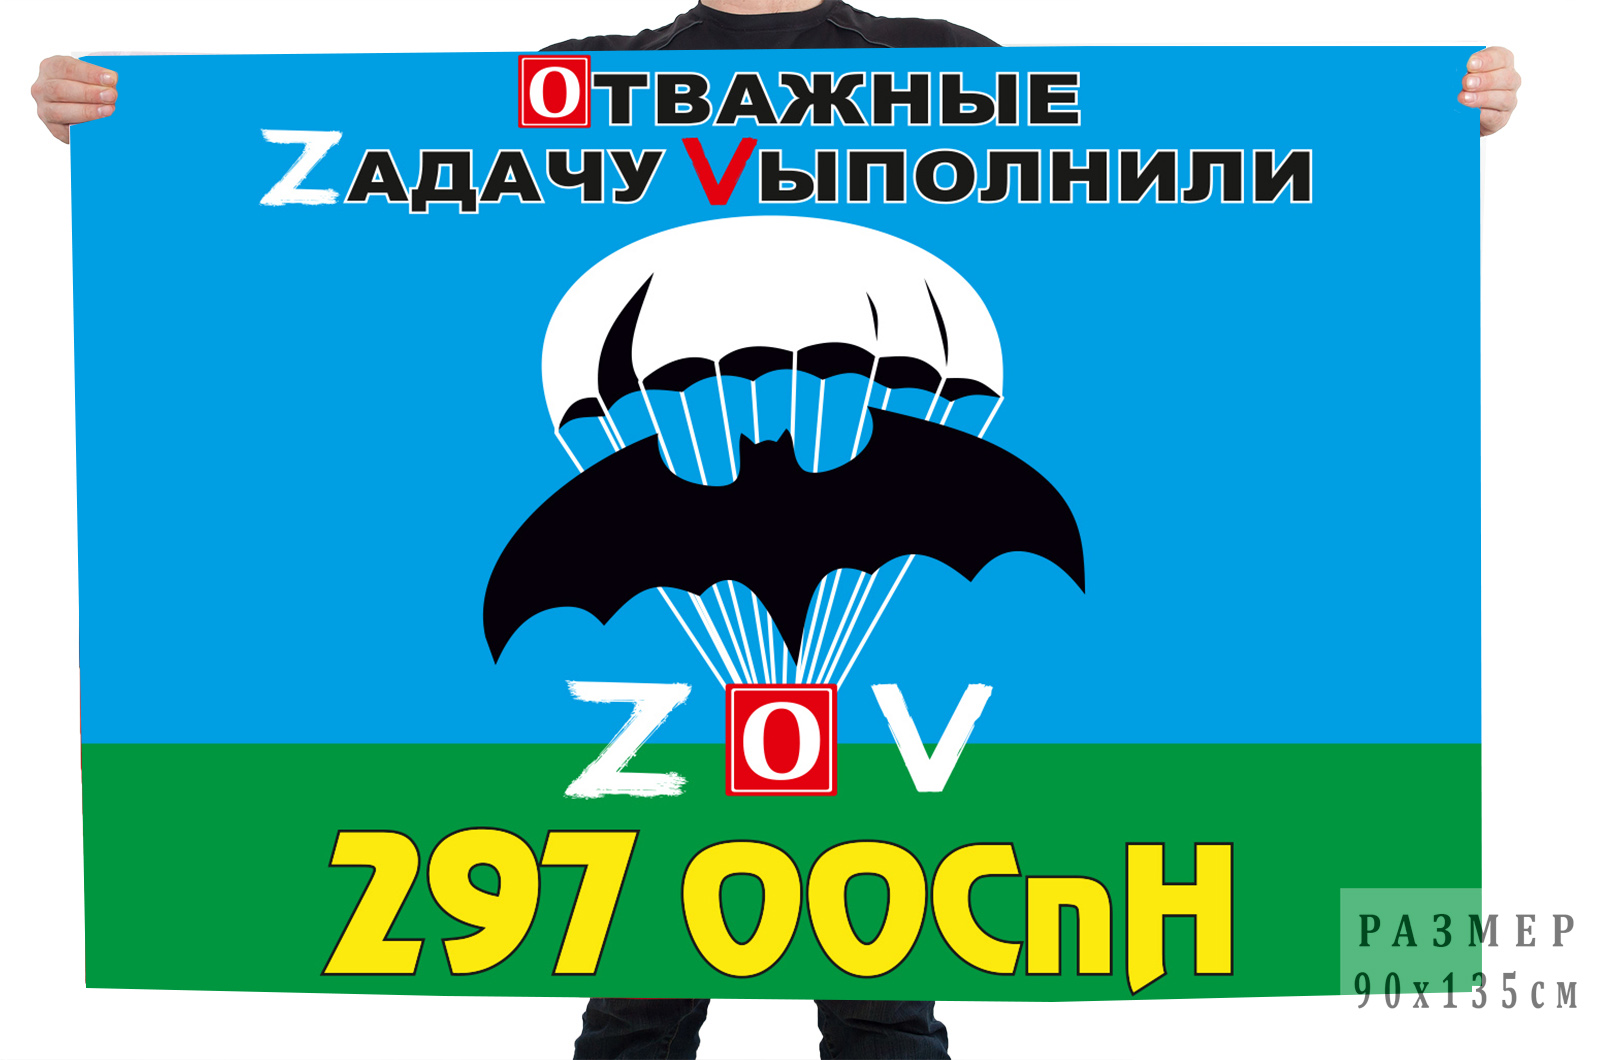 Флаг 297 ООСпН "Спецоперация Z-V"